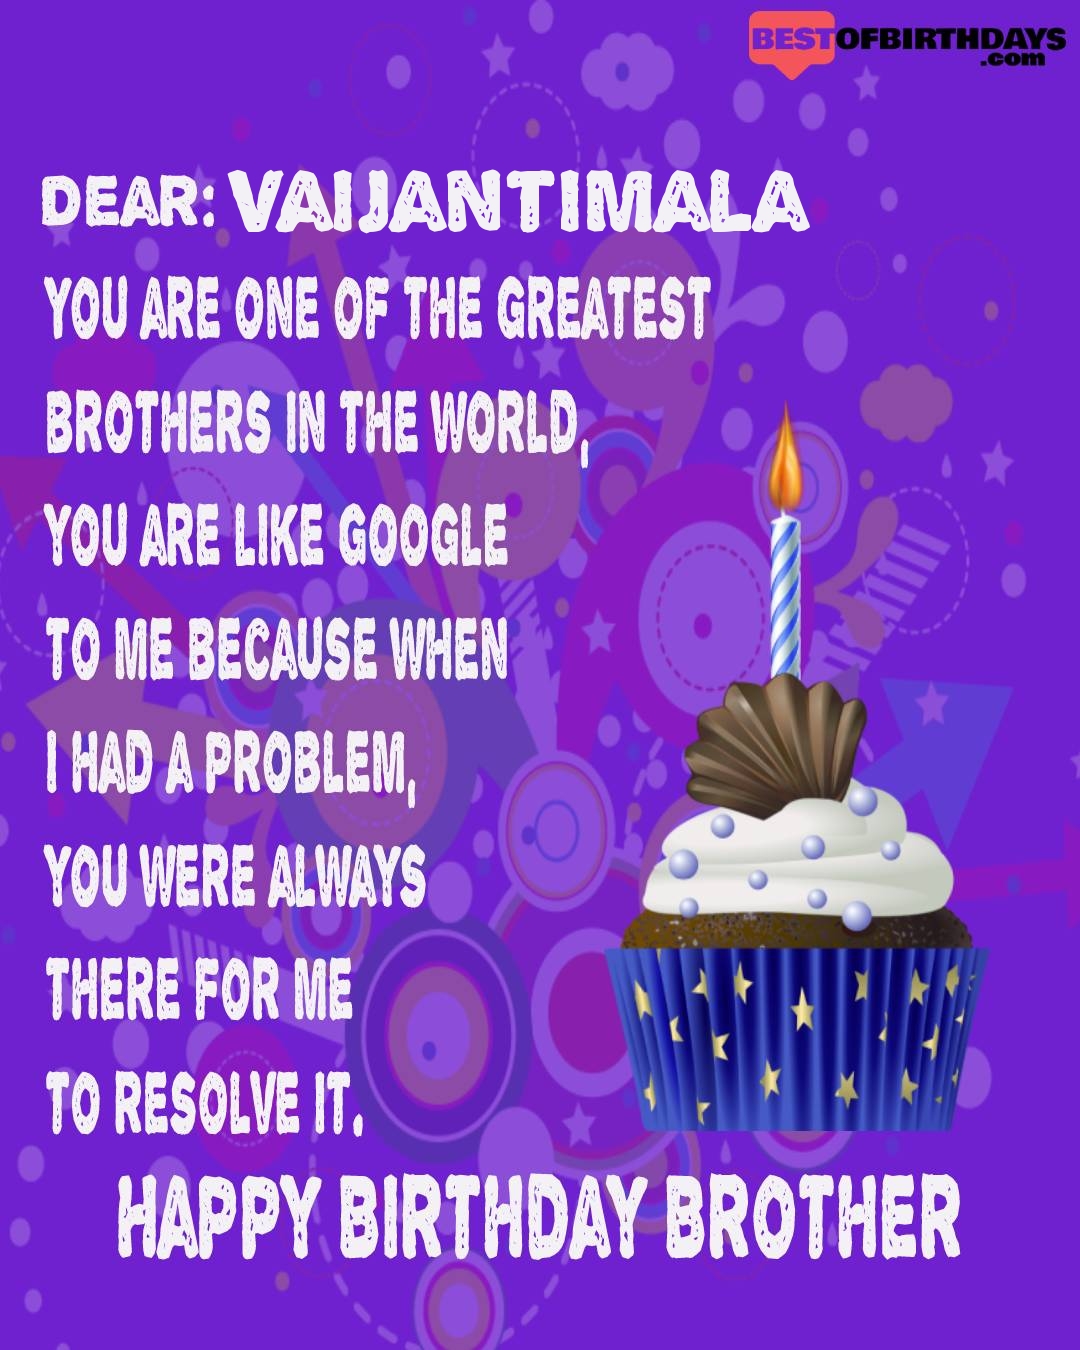 Happy birthday vaijantimala bhai brother bro